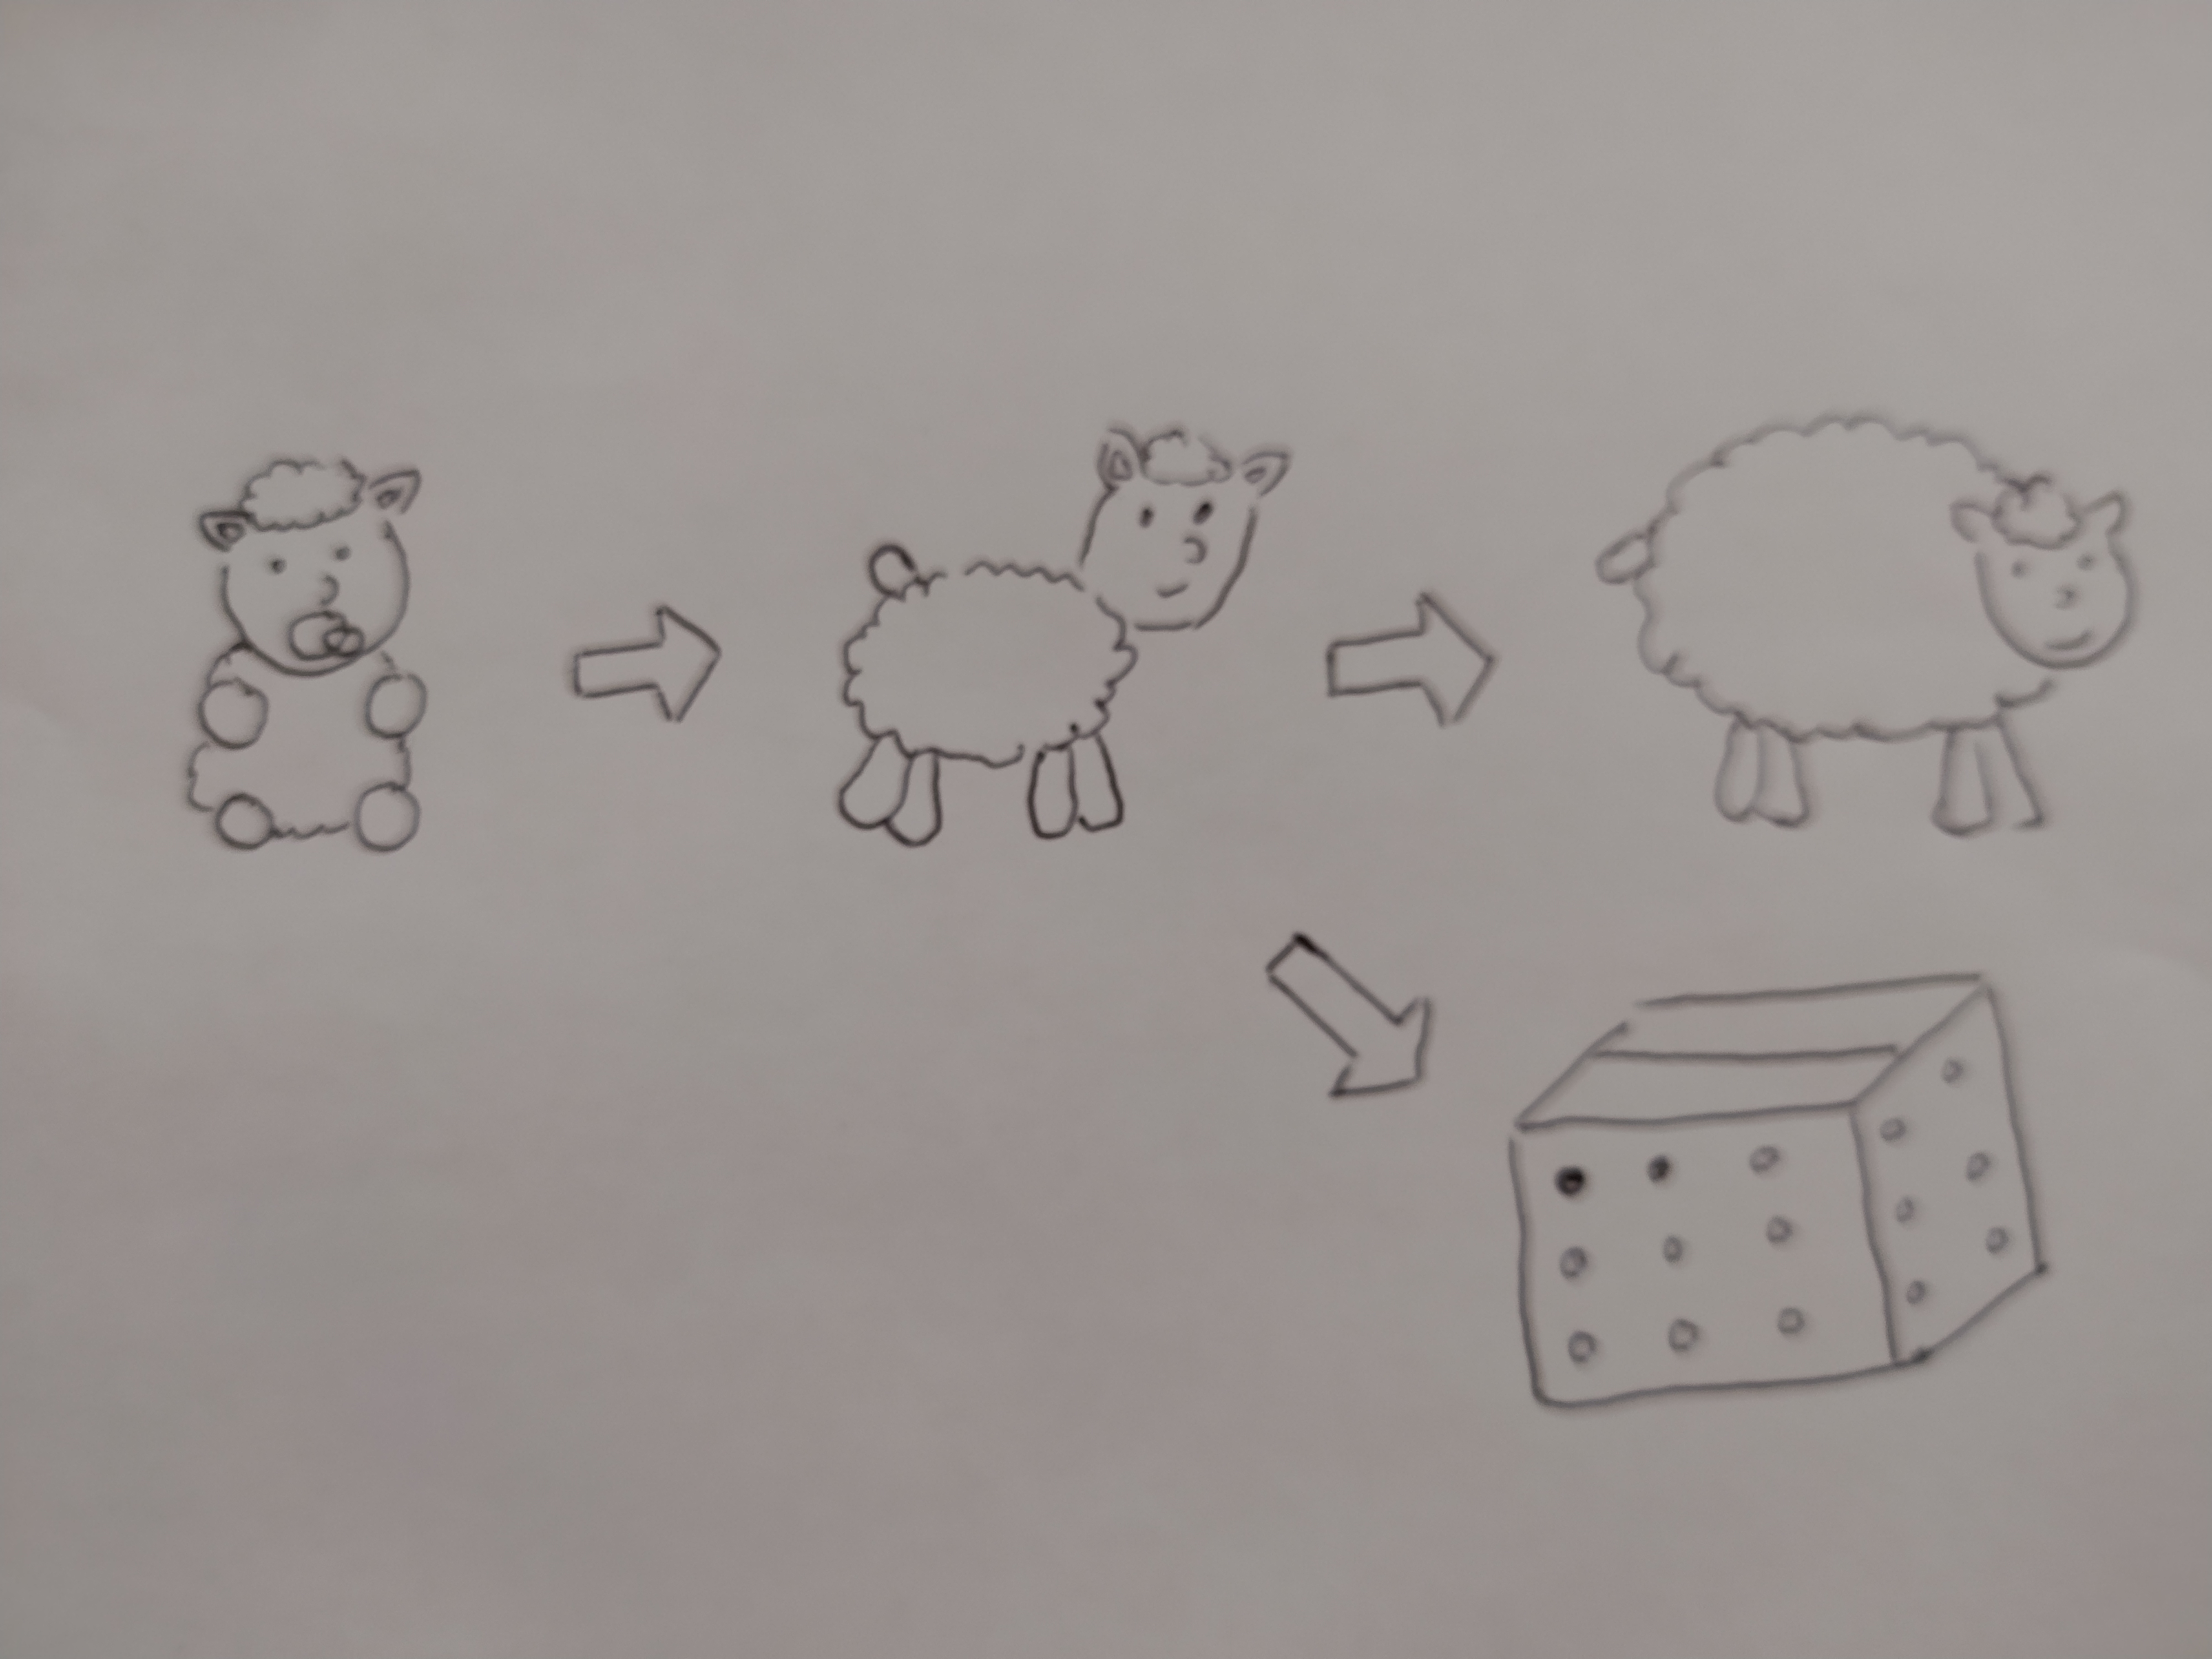 Dibujo que muestra varias versiones de una oveja, desde la oveja bebé hasta la oveja adulta, con flechas de izquierda a derecha. La oveja del medio también puede evolucionar a una caja con agujeros.